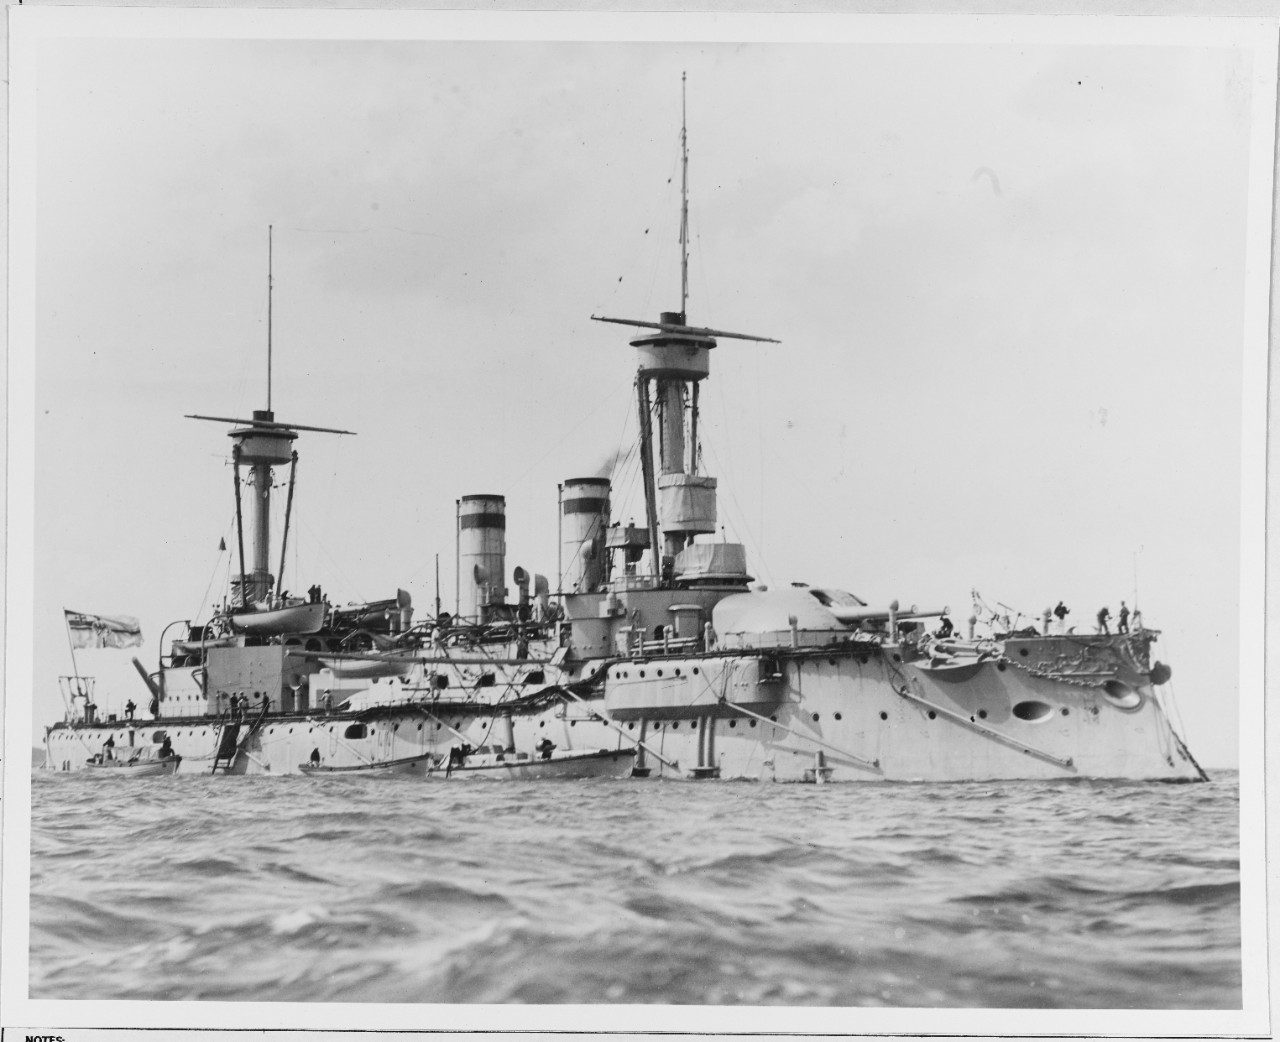 SMS BRADENBURG (German battleship, 1891)